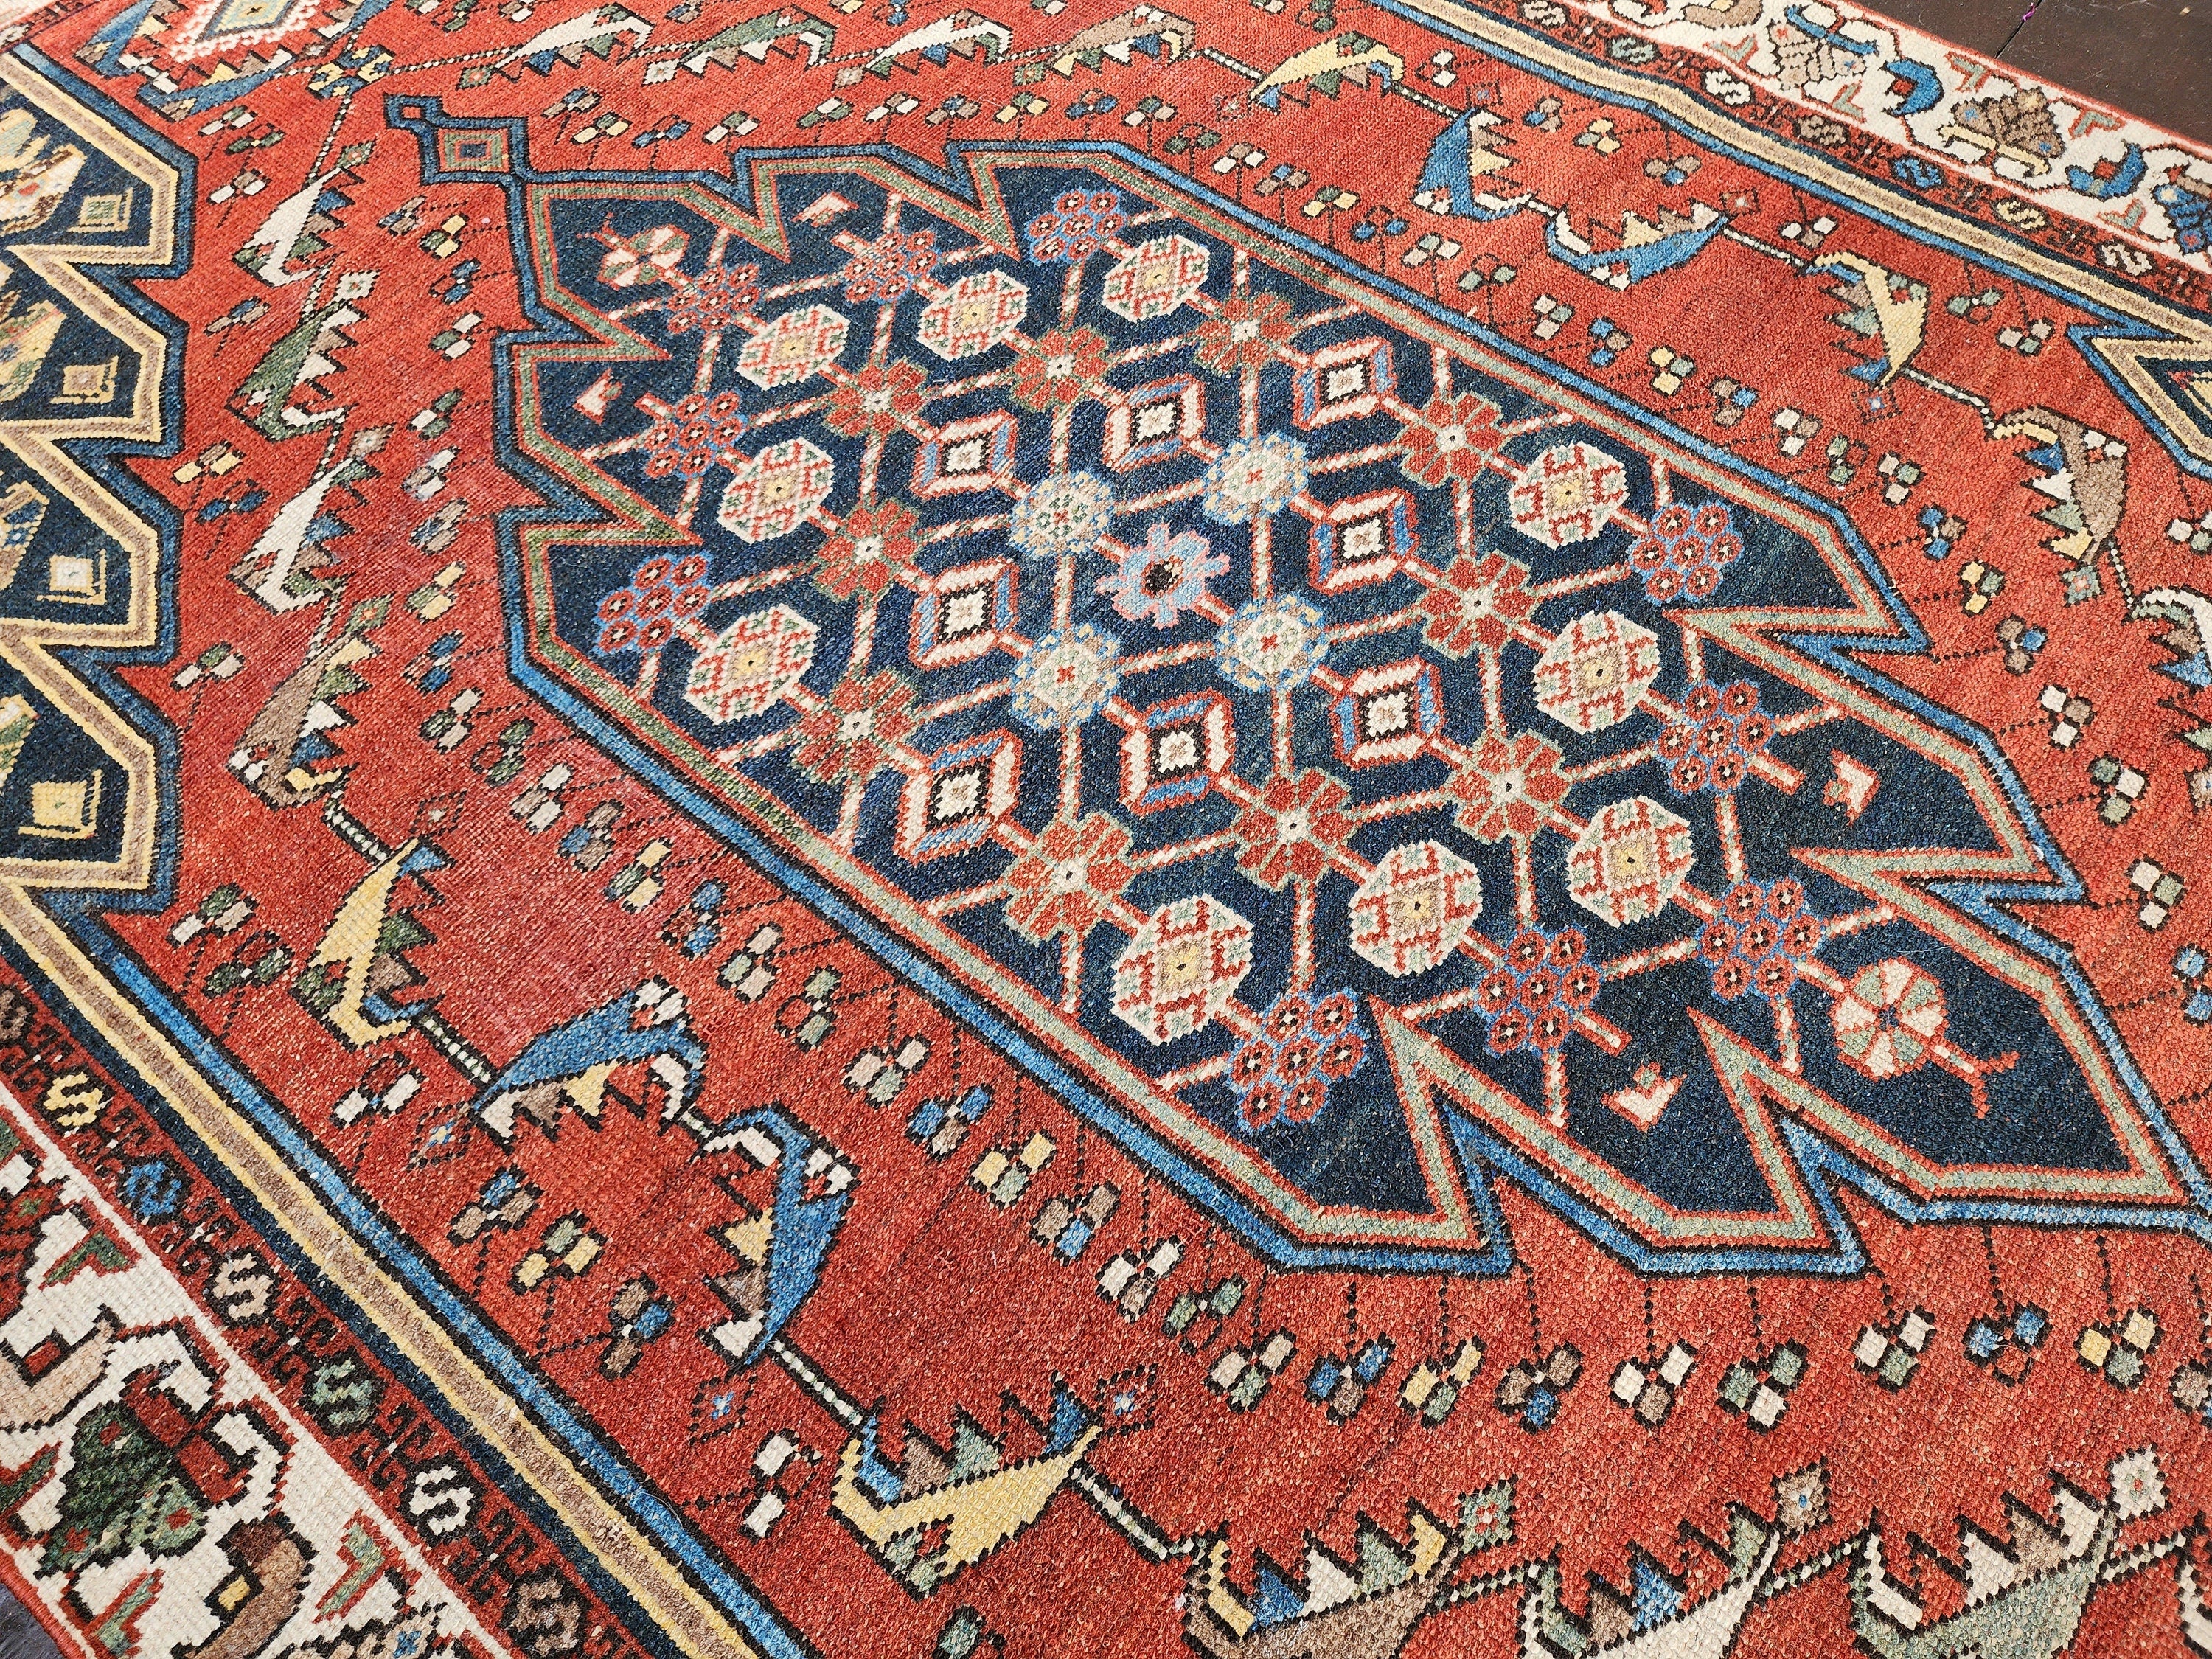 Orange Blue and Beige Natural Wool Vintage Persian Rug 6'2'' x ''4''